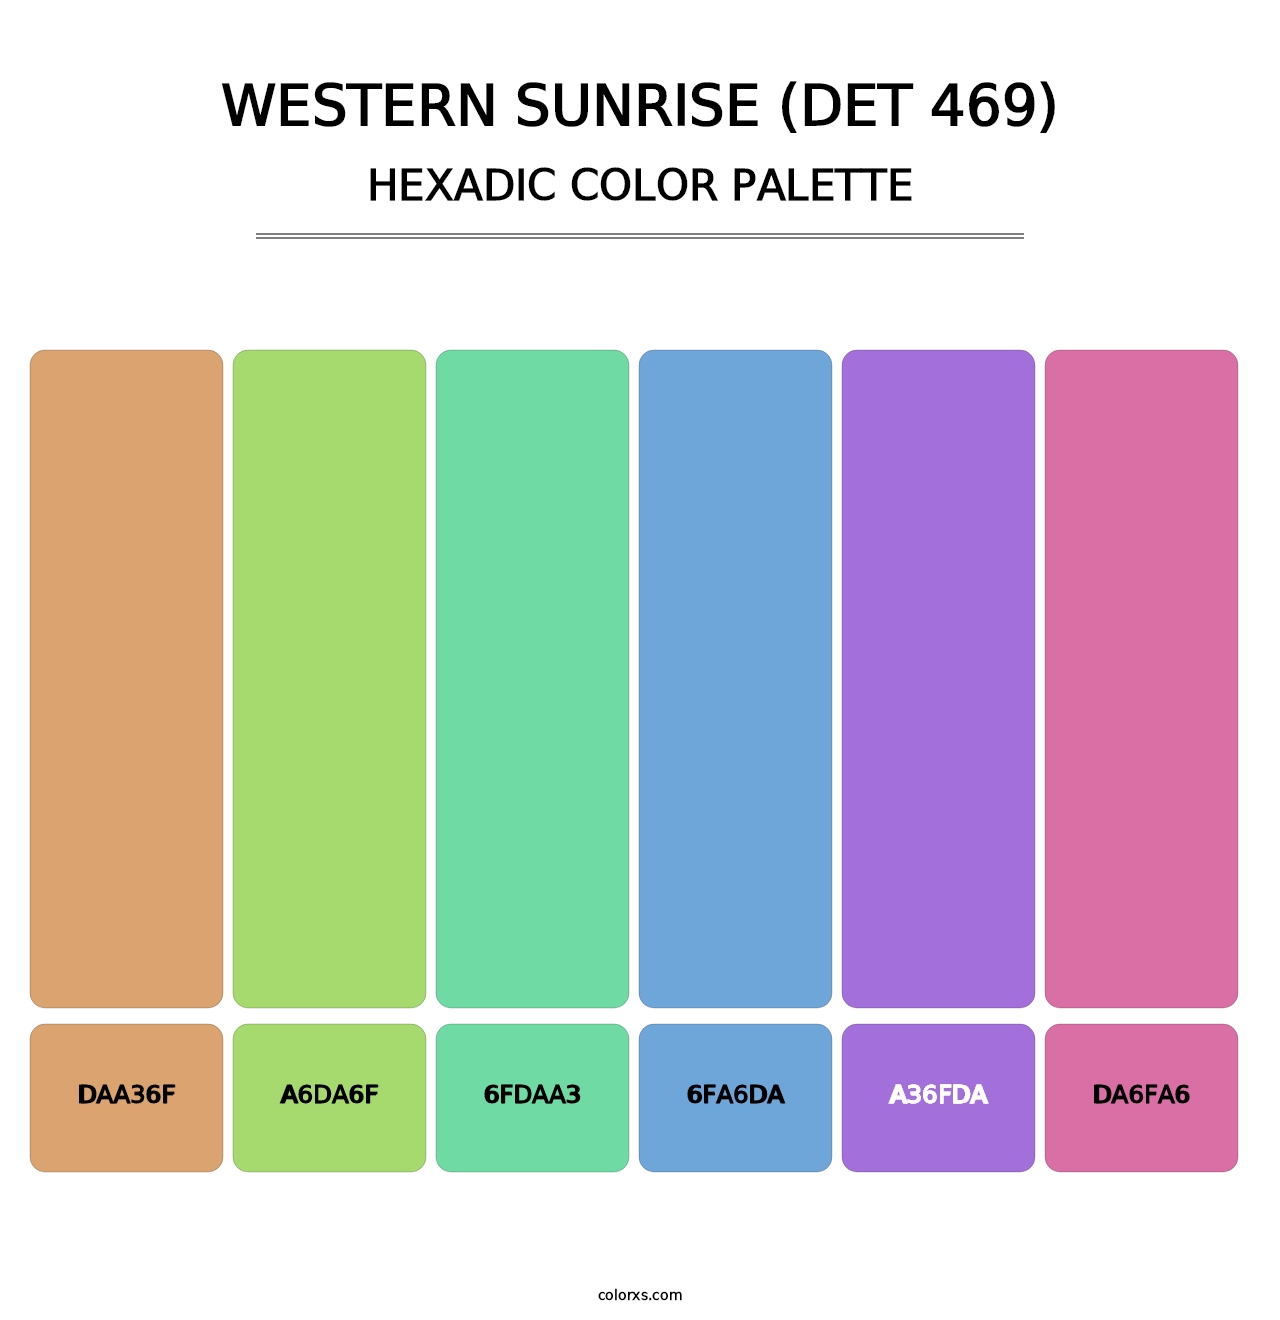 Western Sunrise (DET 469) - Hexadic Color Palette